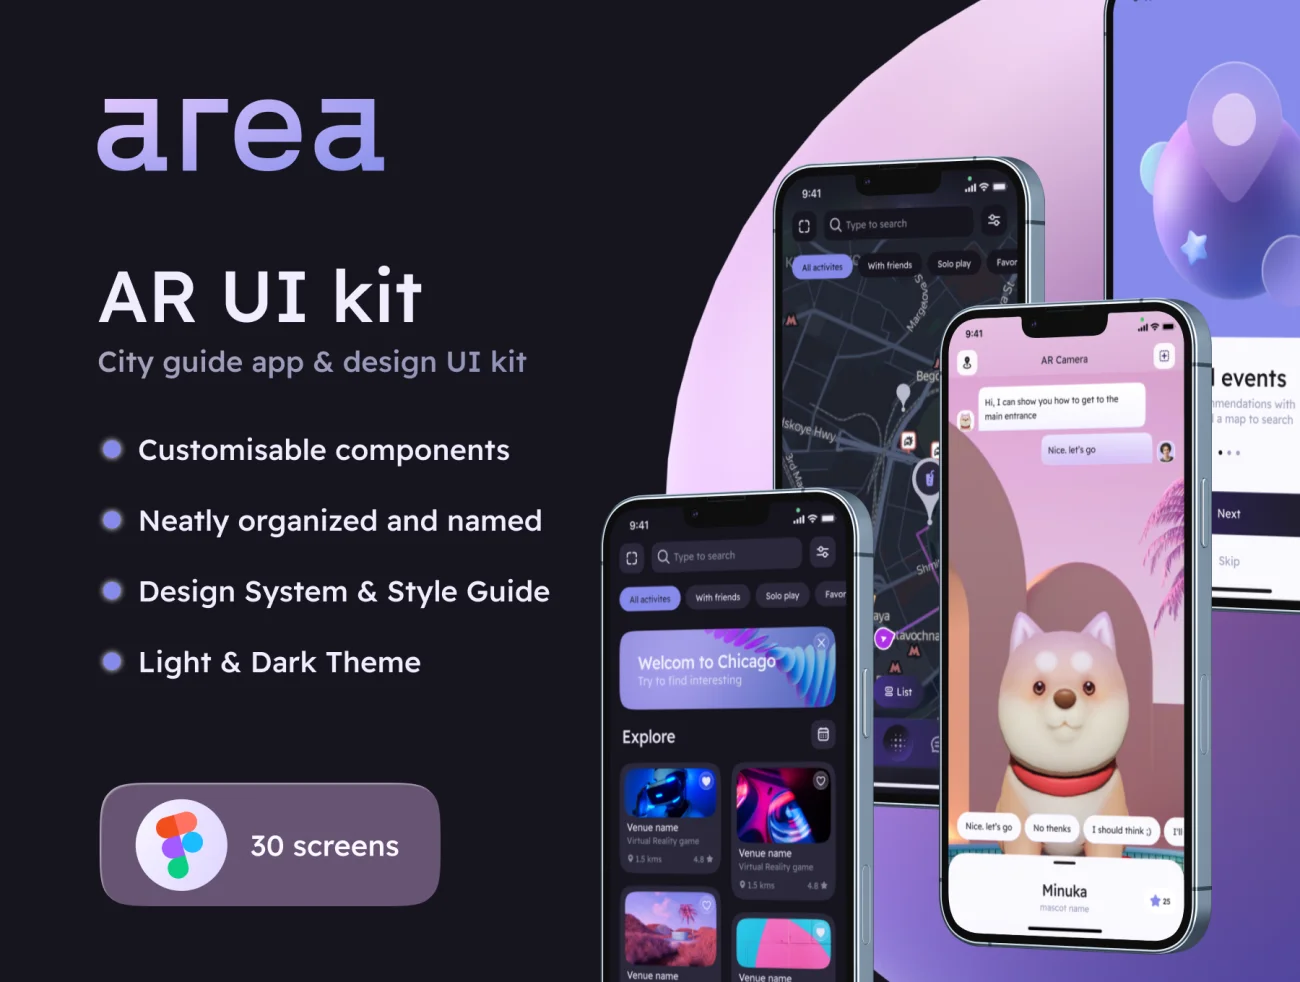 AR城市指南应用程序UI设计套件30屏 AREA – AR city guide app & design UI kit .figma-UI/UX、ui套件、主页、出行、列表、地图、应用、注册、社交、聊天-到位啦UI